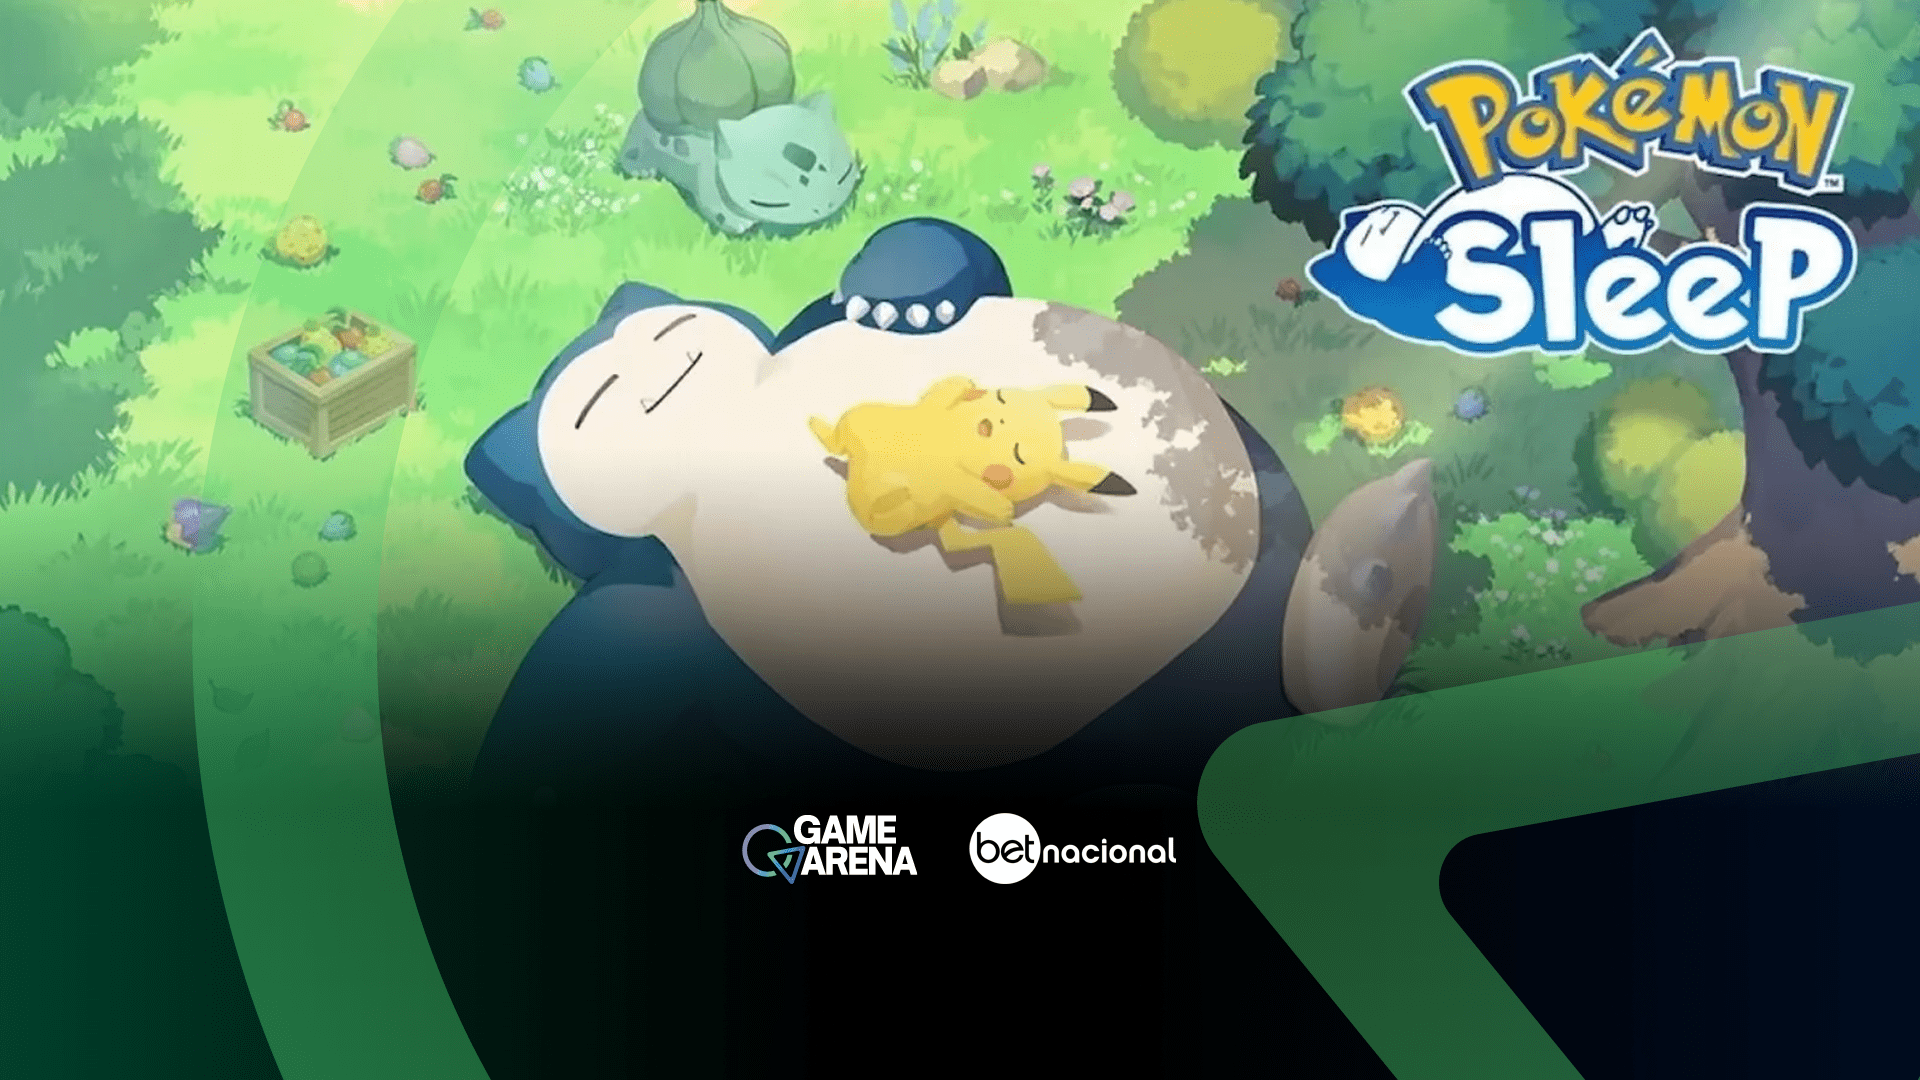 Os cinco anos de Pokémon GO (Mobile) - Nintendo Blast